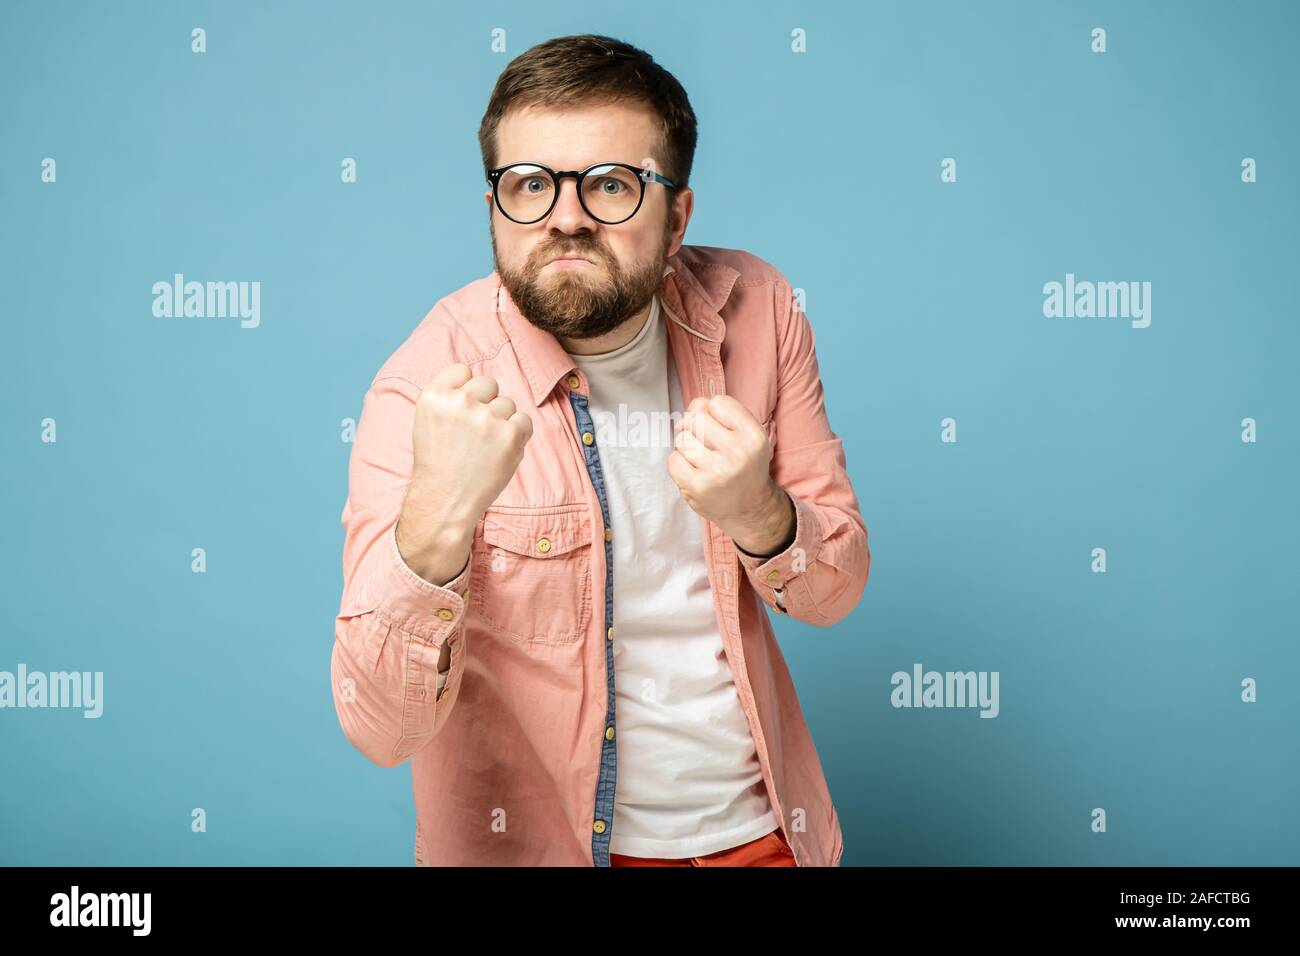 Bärtiger Mann mit Brille ballte seine Fäuste und wollte sich selbst zu  verteidigen, mit einem lustigen Ausdruck auf seinem Gesicht Stockfotografie  - Alamy